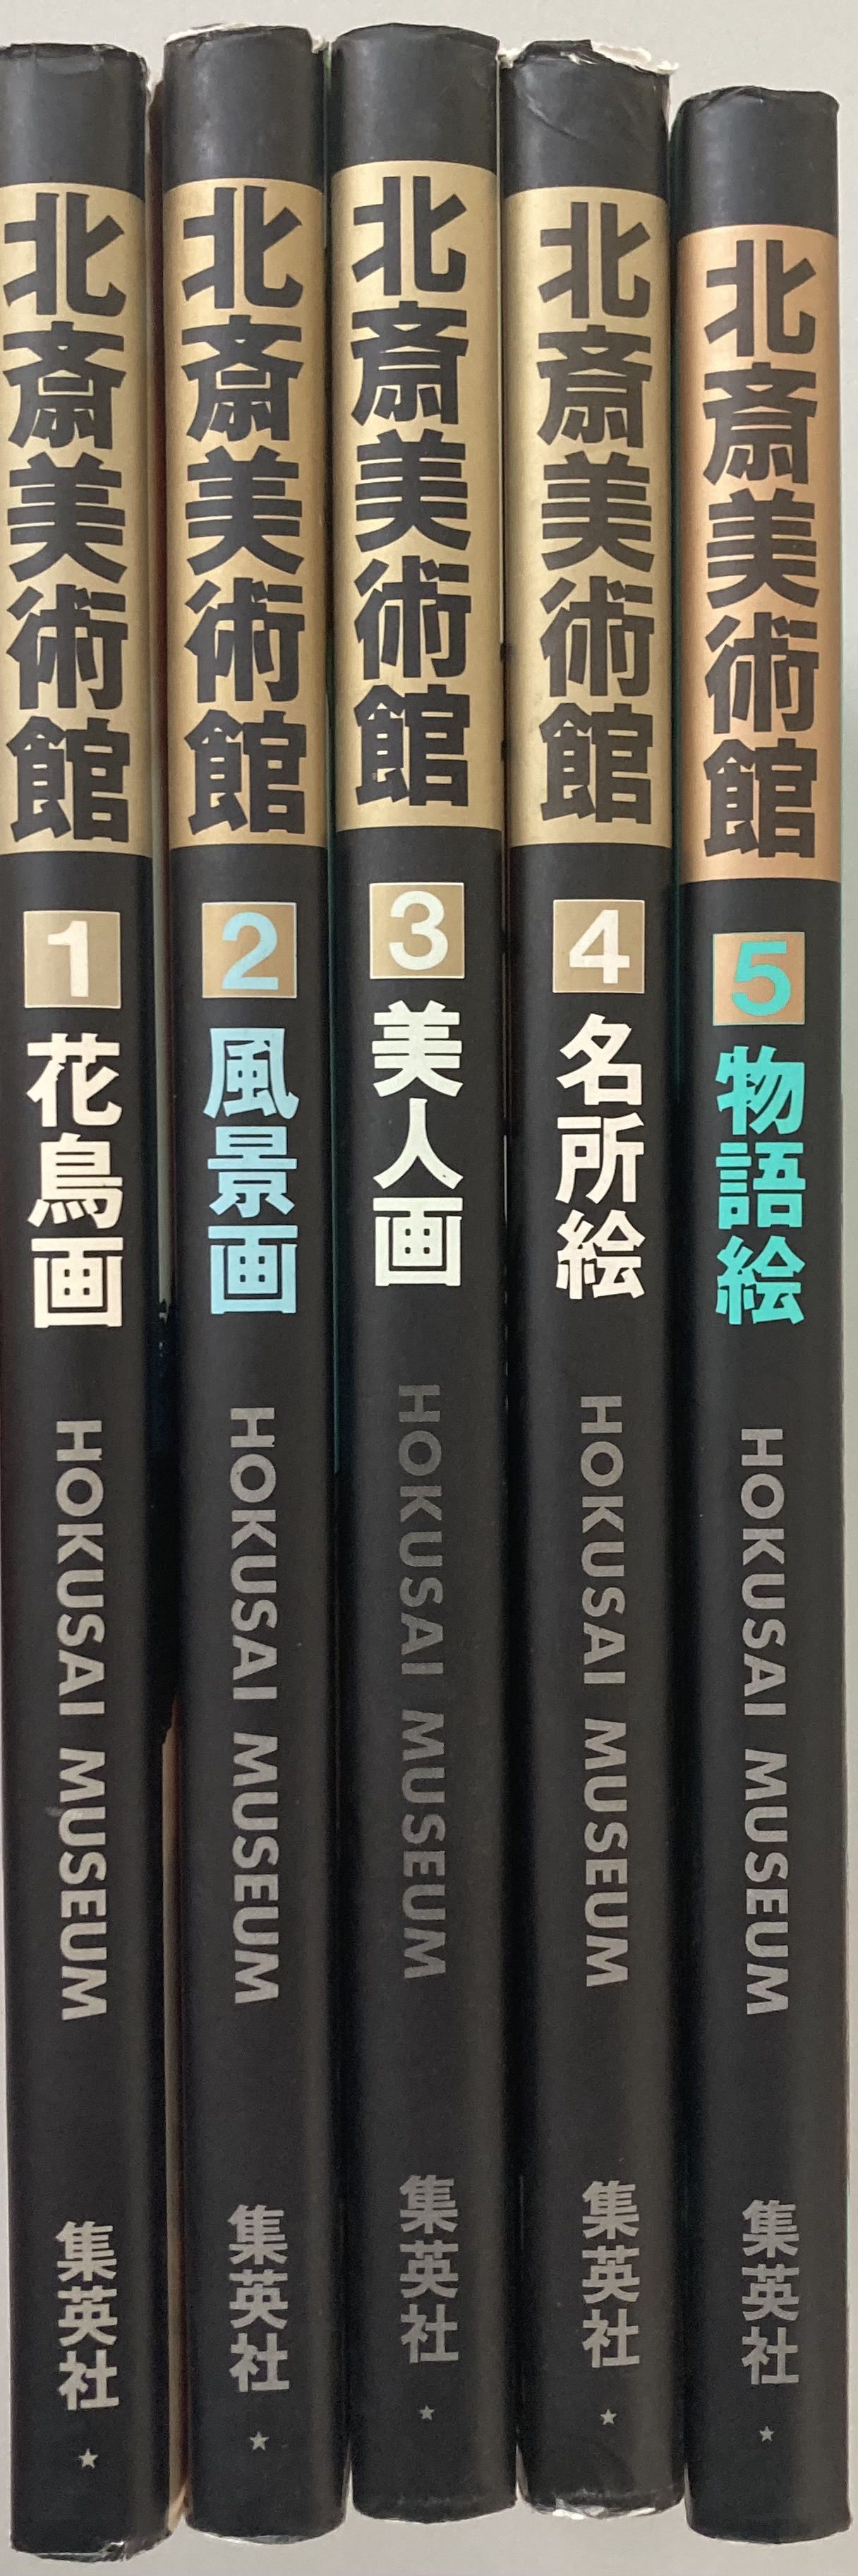 Hokusai bijutsukan = Hokusai museum : 1. Kachoga -- 2. Fukeiga -- 3. Bijinga -- 4. Meishoe -- 5. Monogatarie [5 volume set] - Hokusai Katsushika = Hokusai museum ; Seiji Nagata